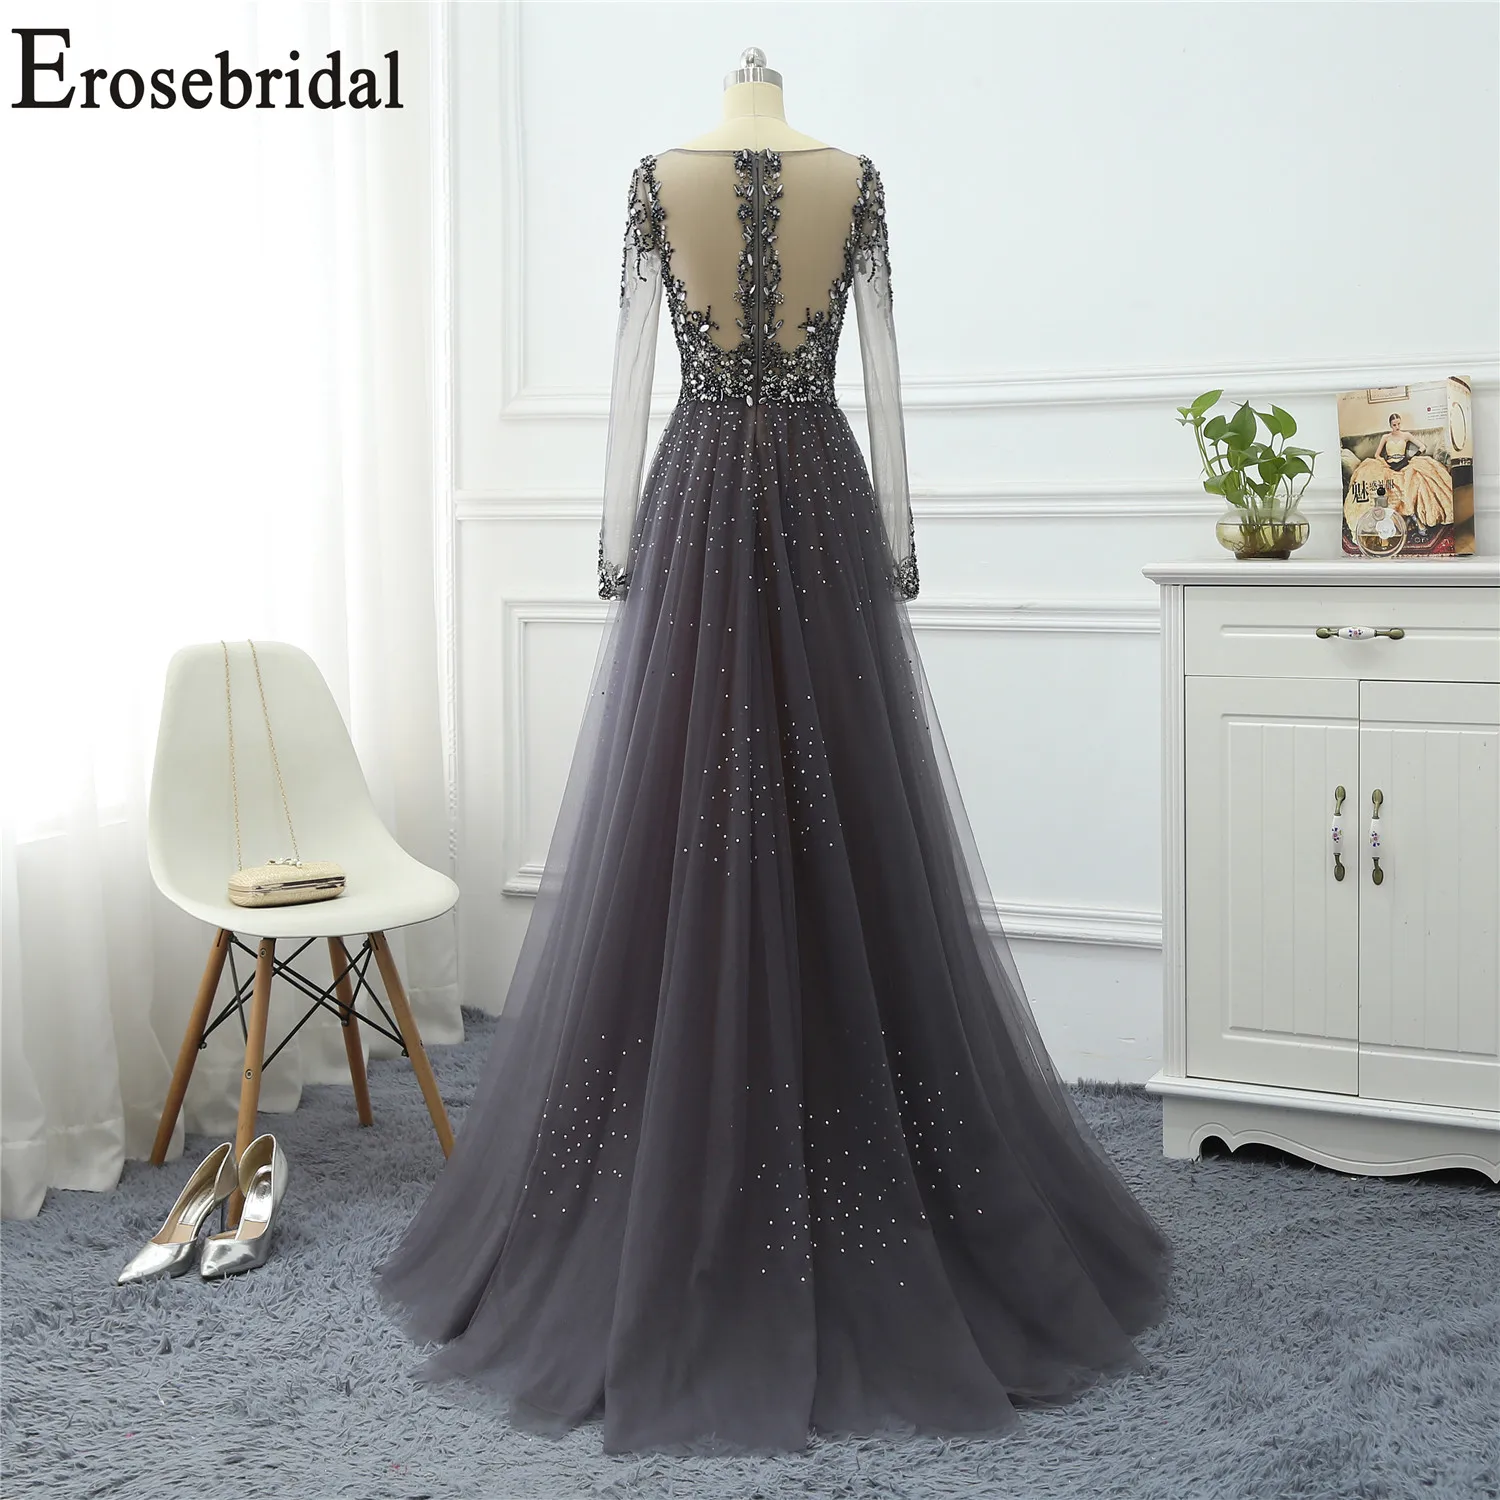 Erosebridal платье с бисером элегантное вечернее платье длинное без рукавов длинное вечернее платье для женщин